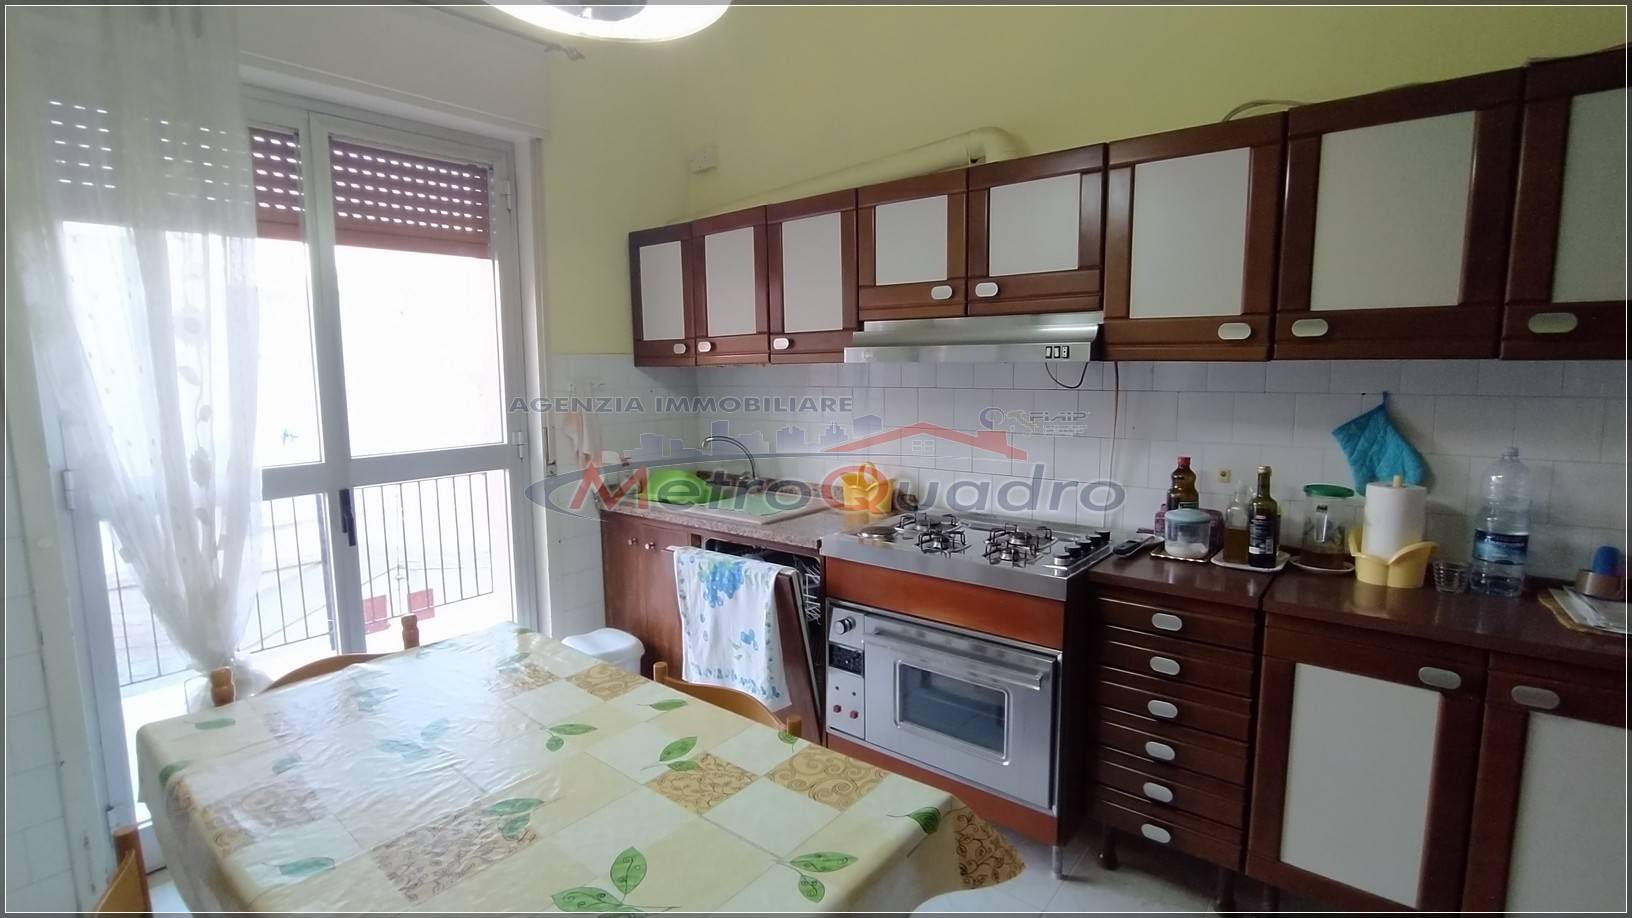 Appartamento in vendita a Canicattì, 4 locali, zona Località: D 3-4 ZONA CHIESA MARIA AUSILIATRICE, prezzo € 110.000 | CambioCasa.it